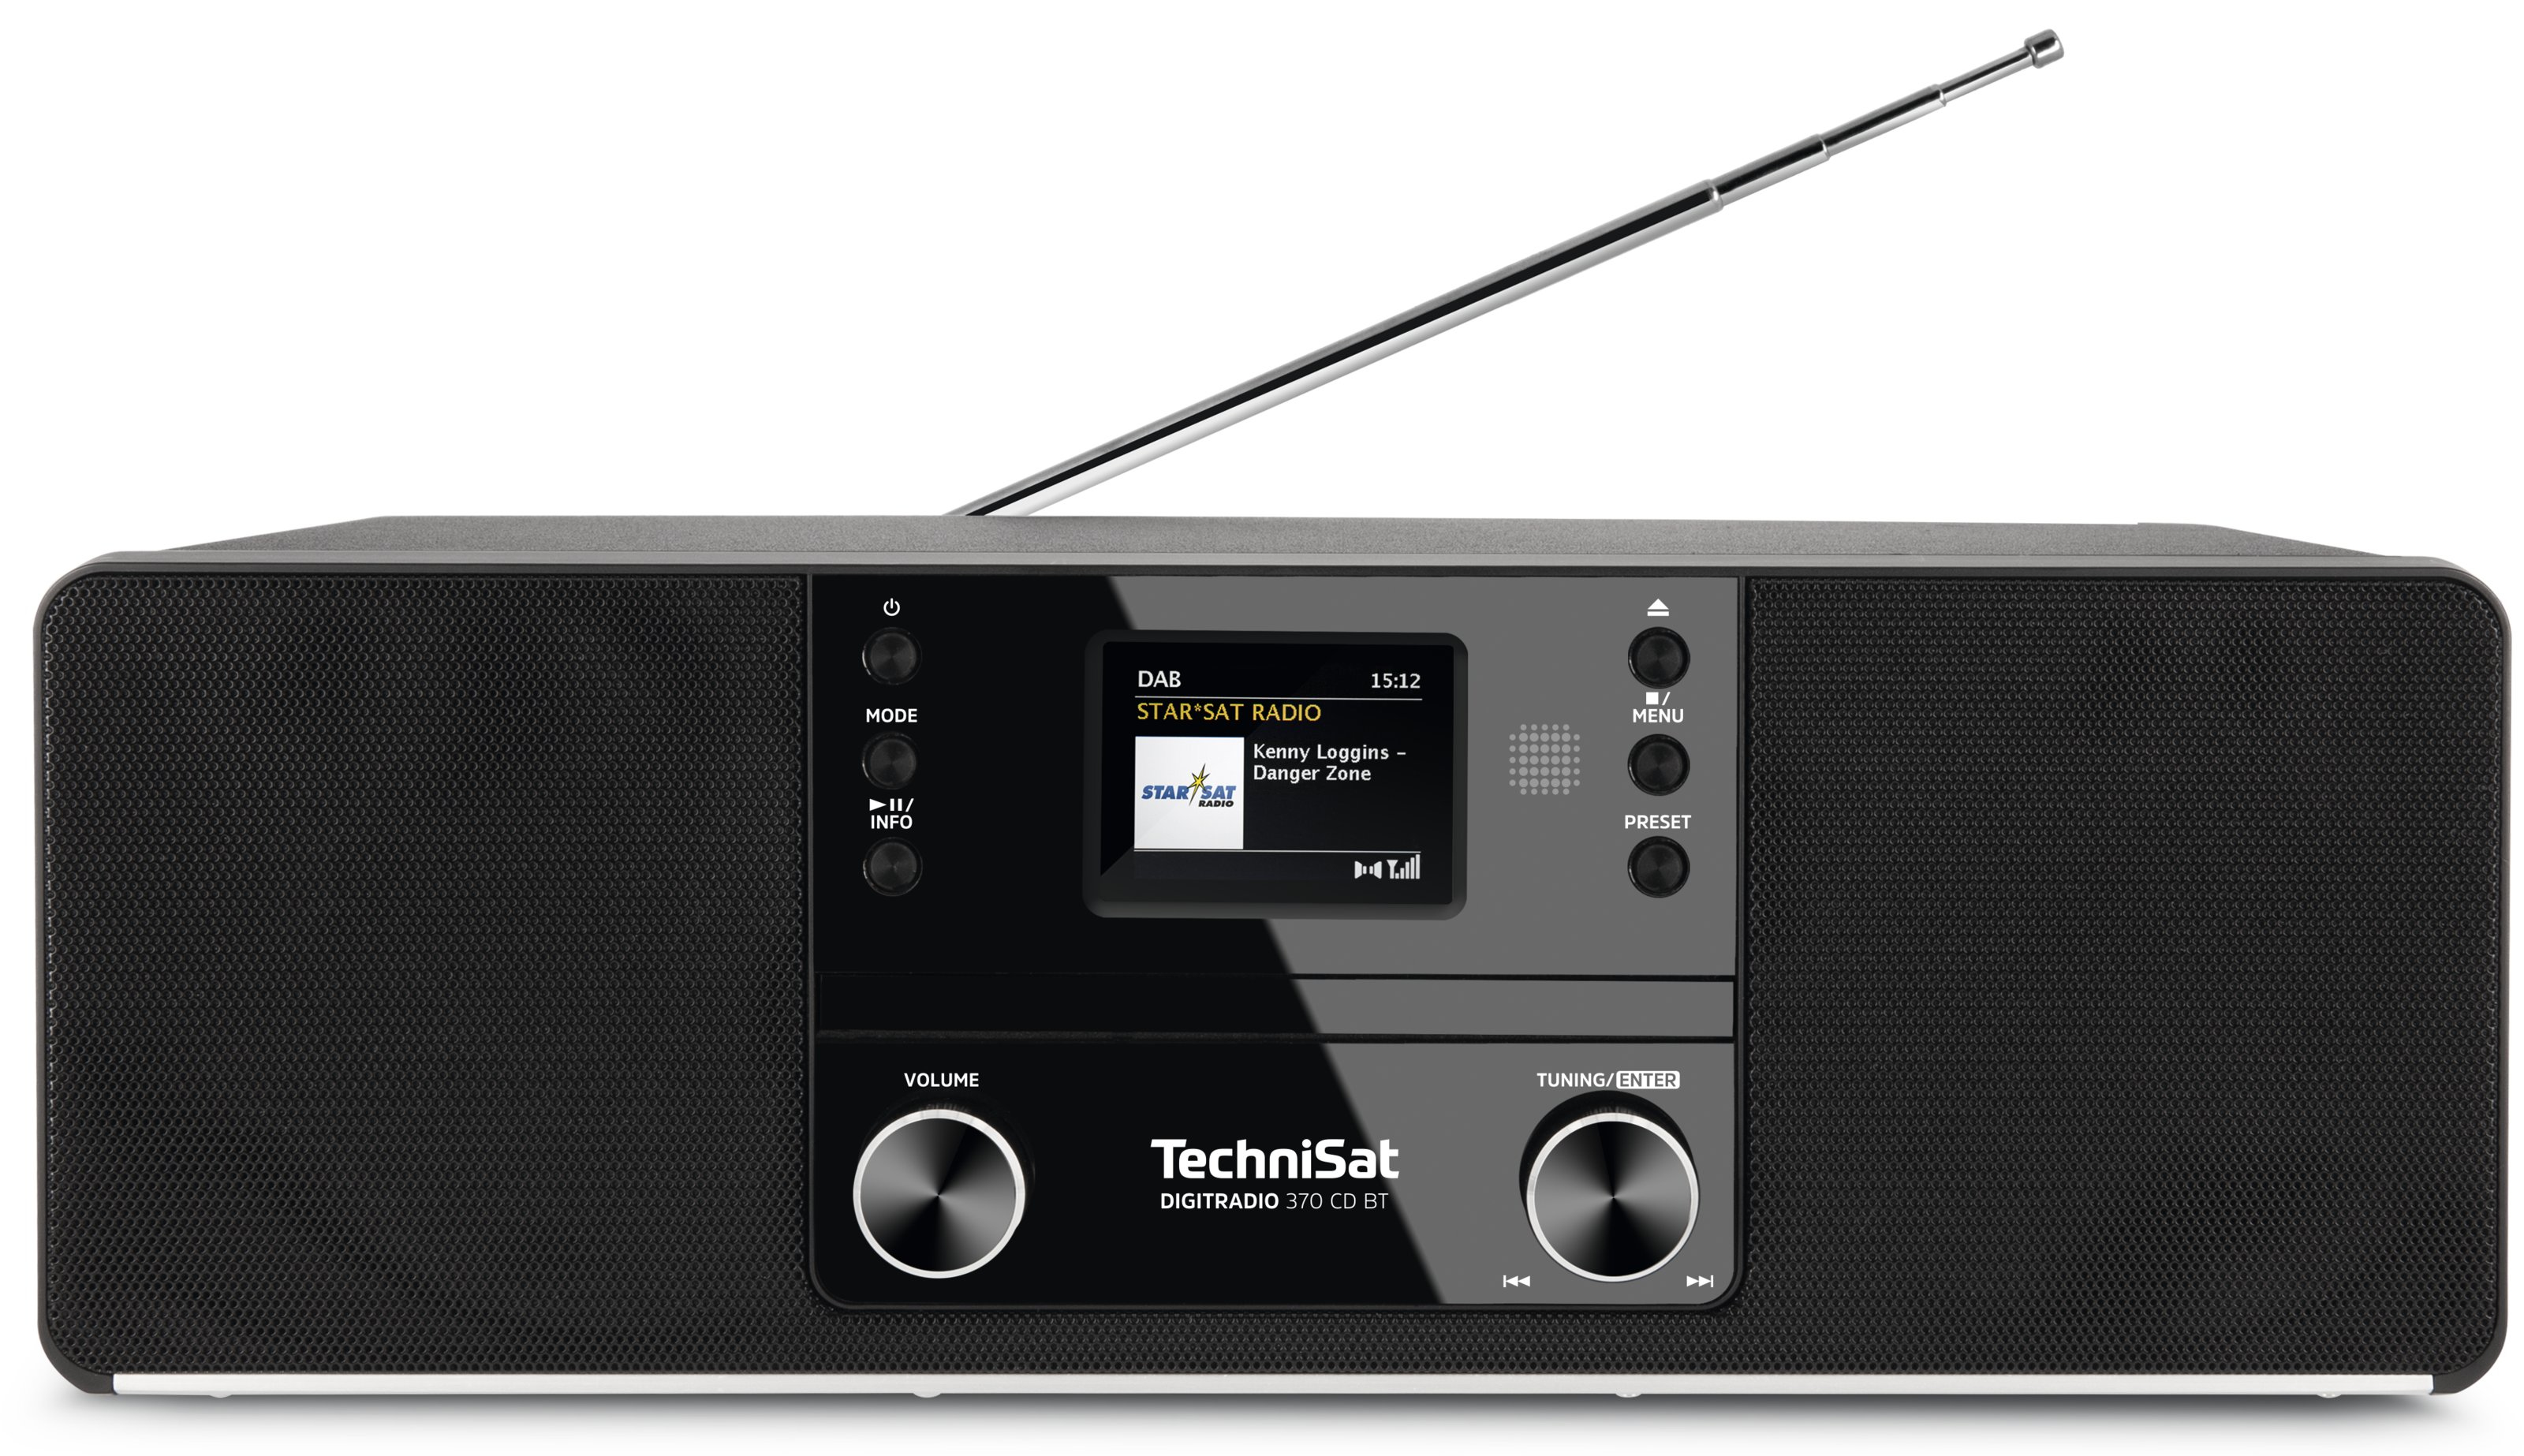 TechniSat DigitRadio 370 BT CD